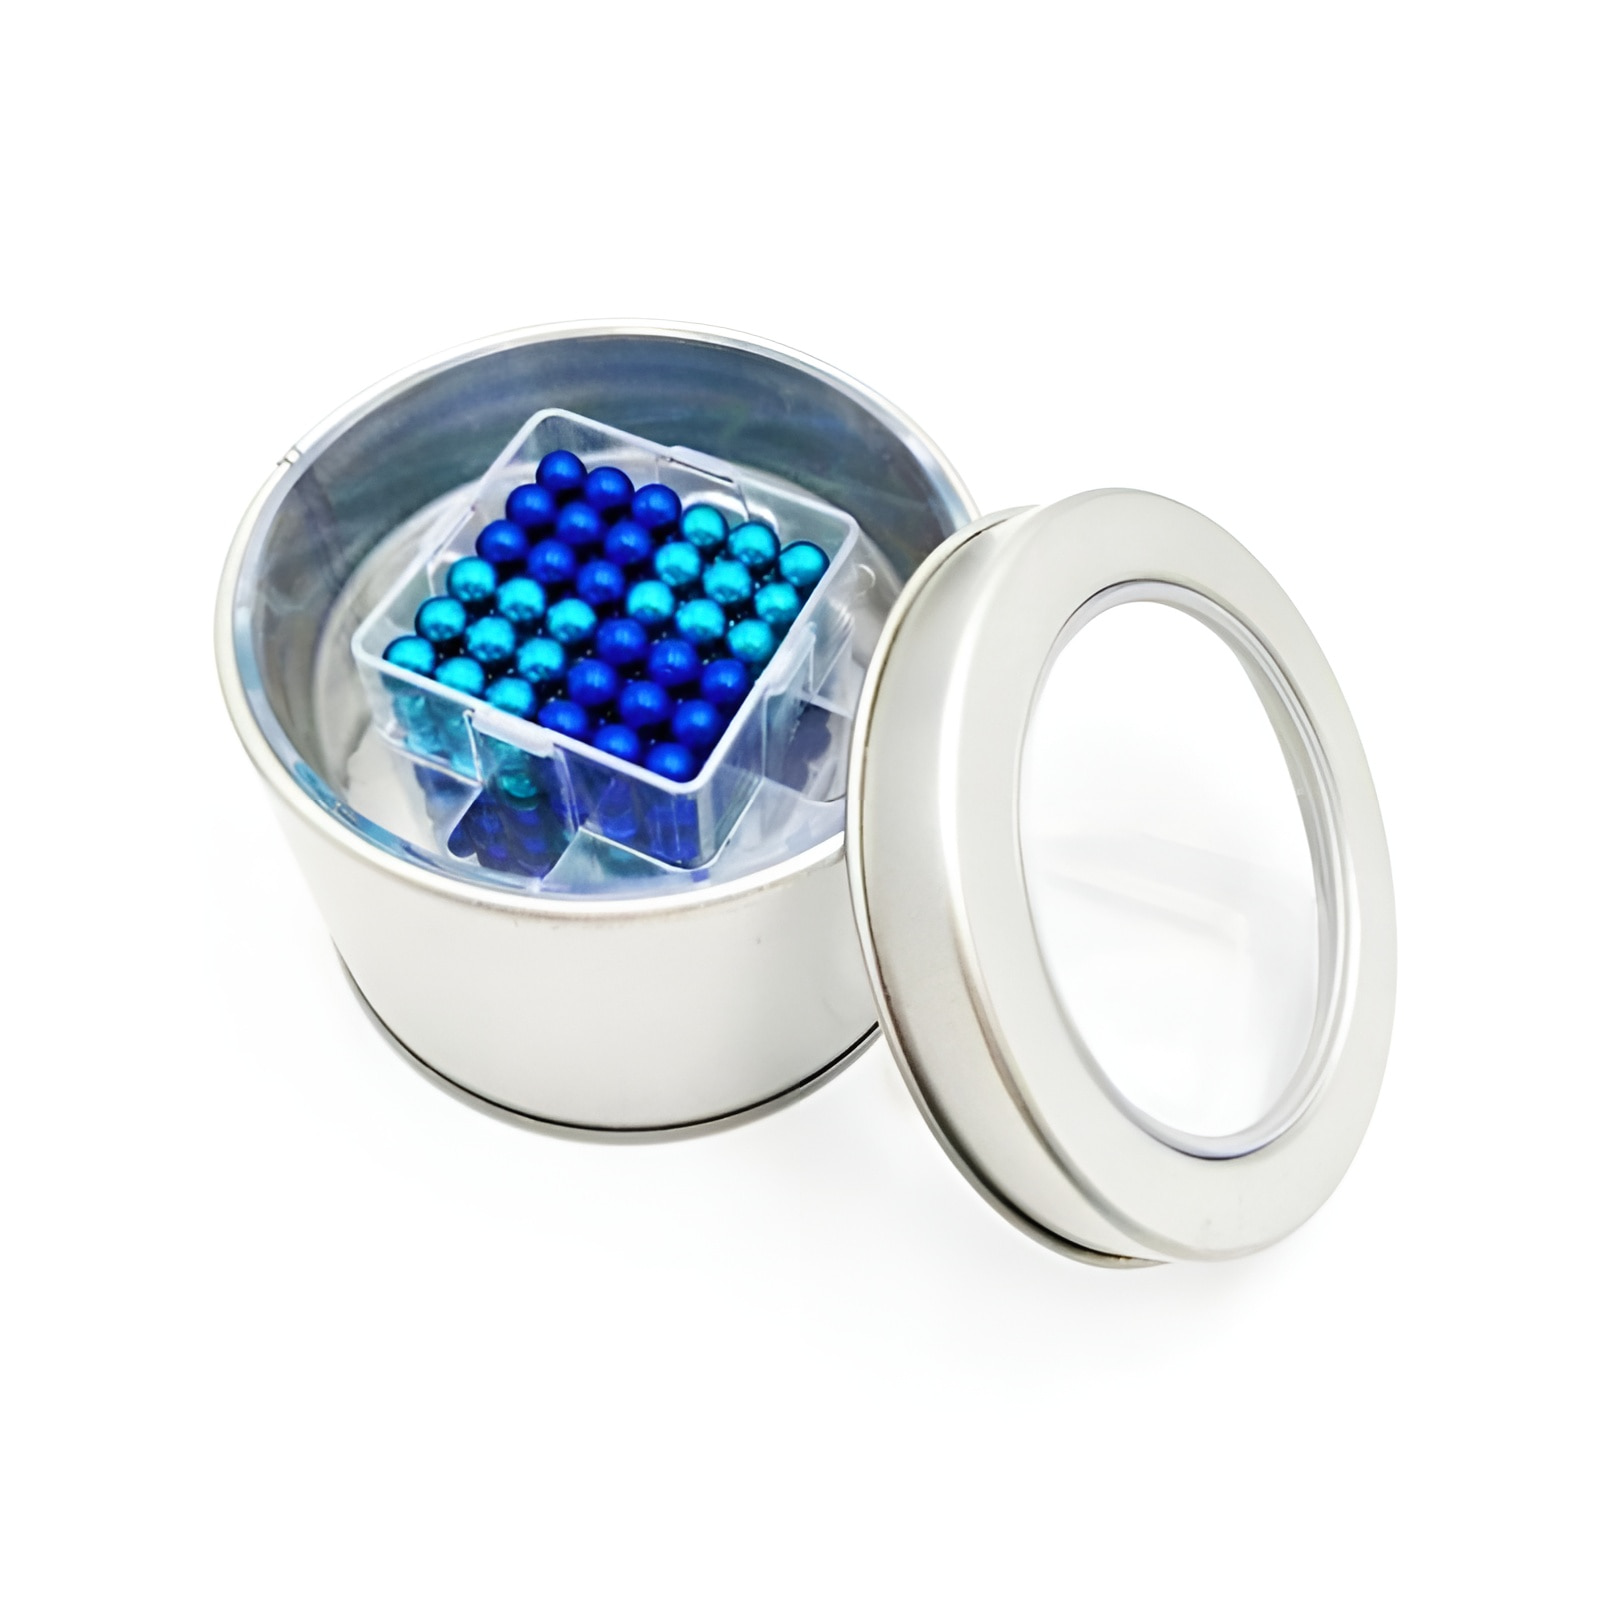 216 Pieces Mix Blue Magnetic Balls 5mm Desktop Fidget Toy